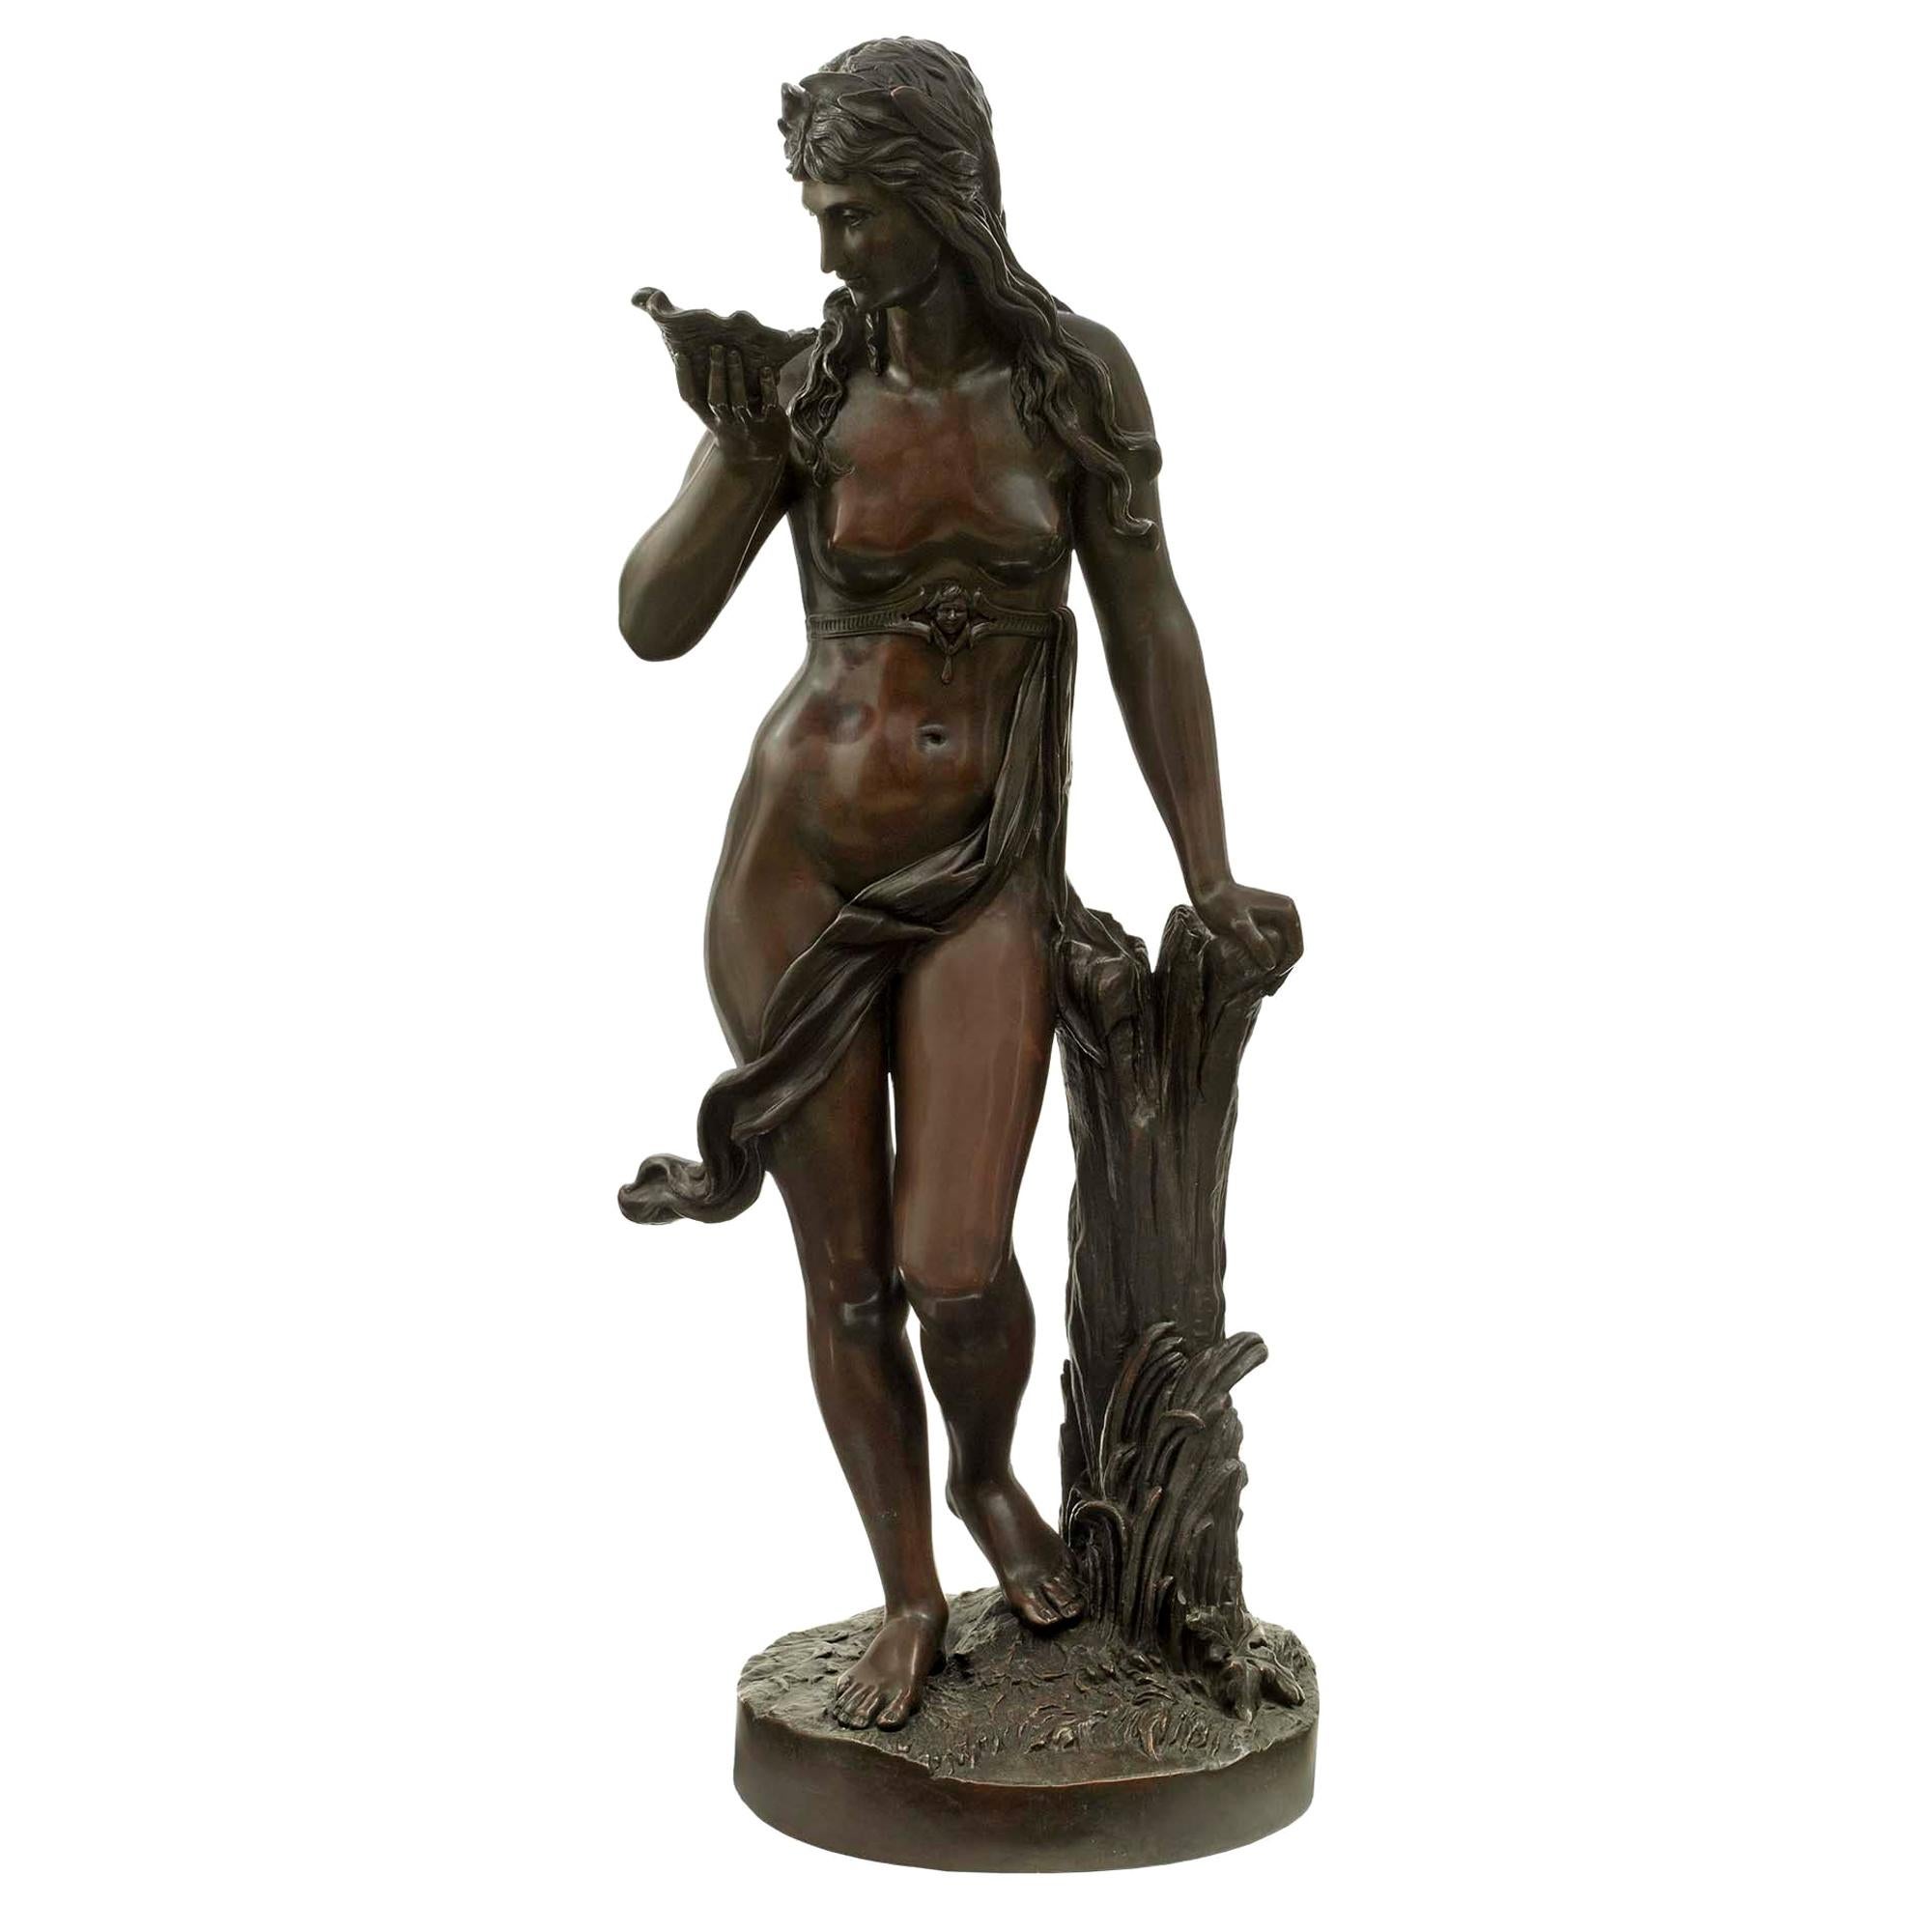 Kontinentale patinierte Bronzestatue eines Mädchens, das eine Muschel hält, Kontinental, 19. Jahrhundert